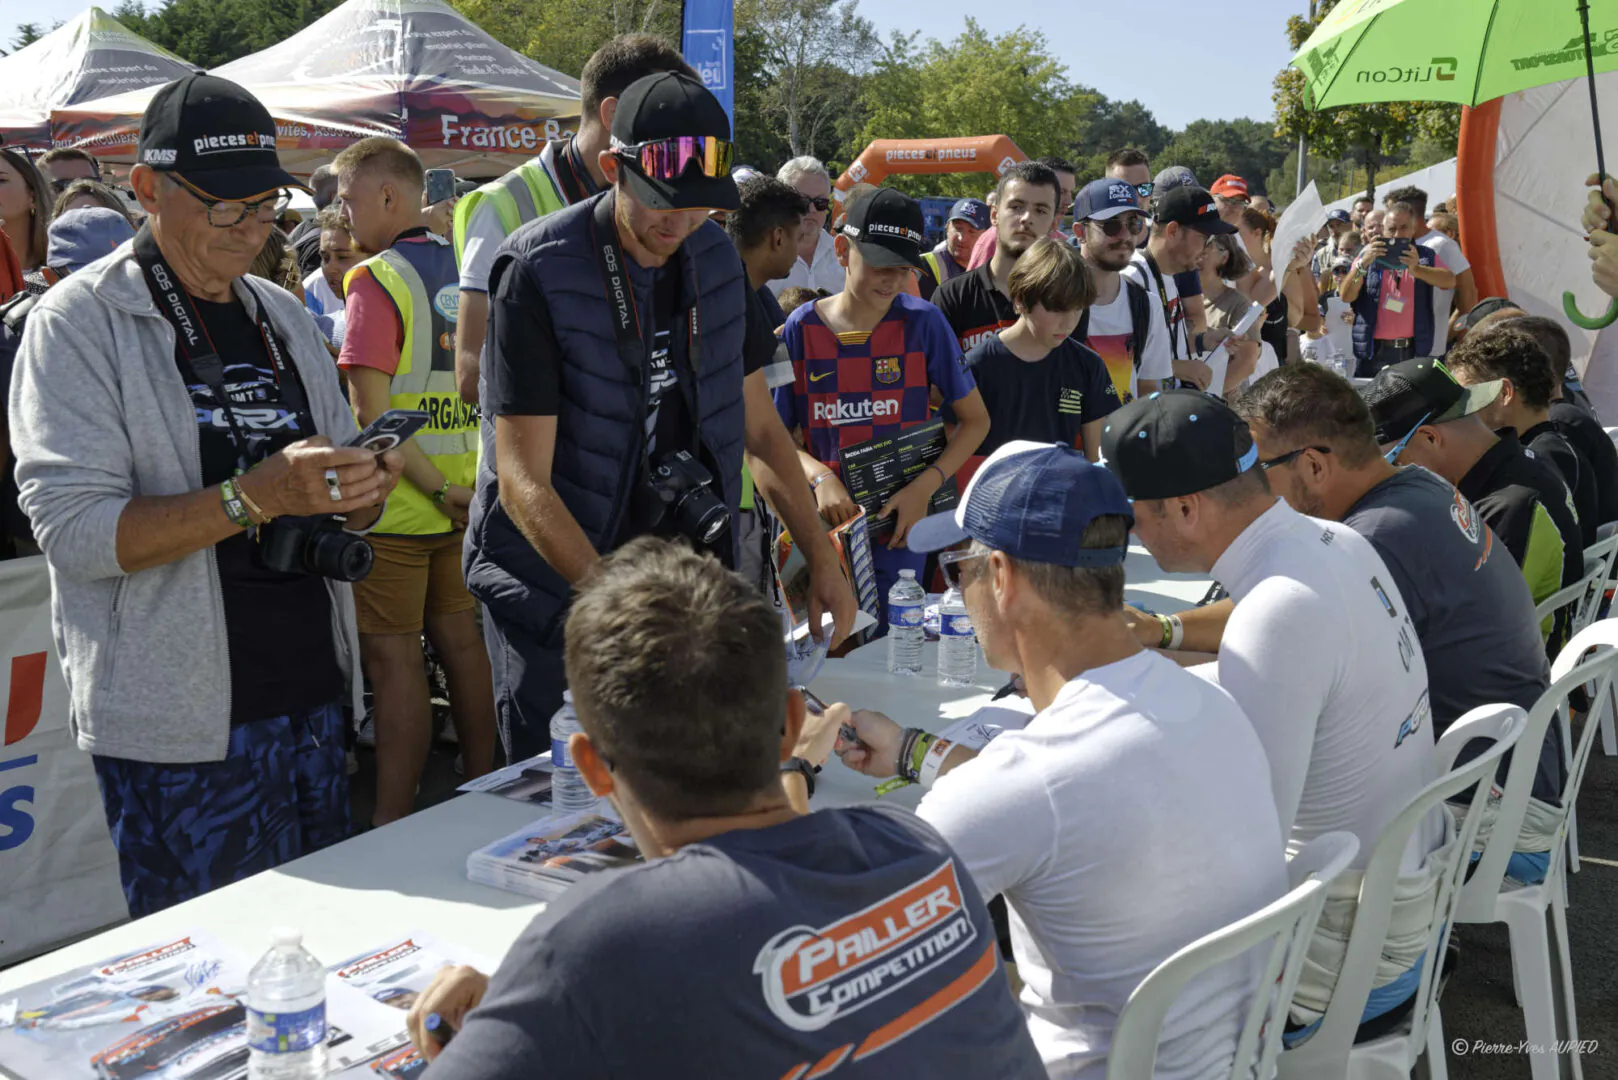 Séance des signatures au ralycross de Lohéac 2023 avec Sébastien LOEB